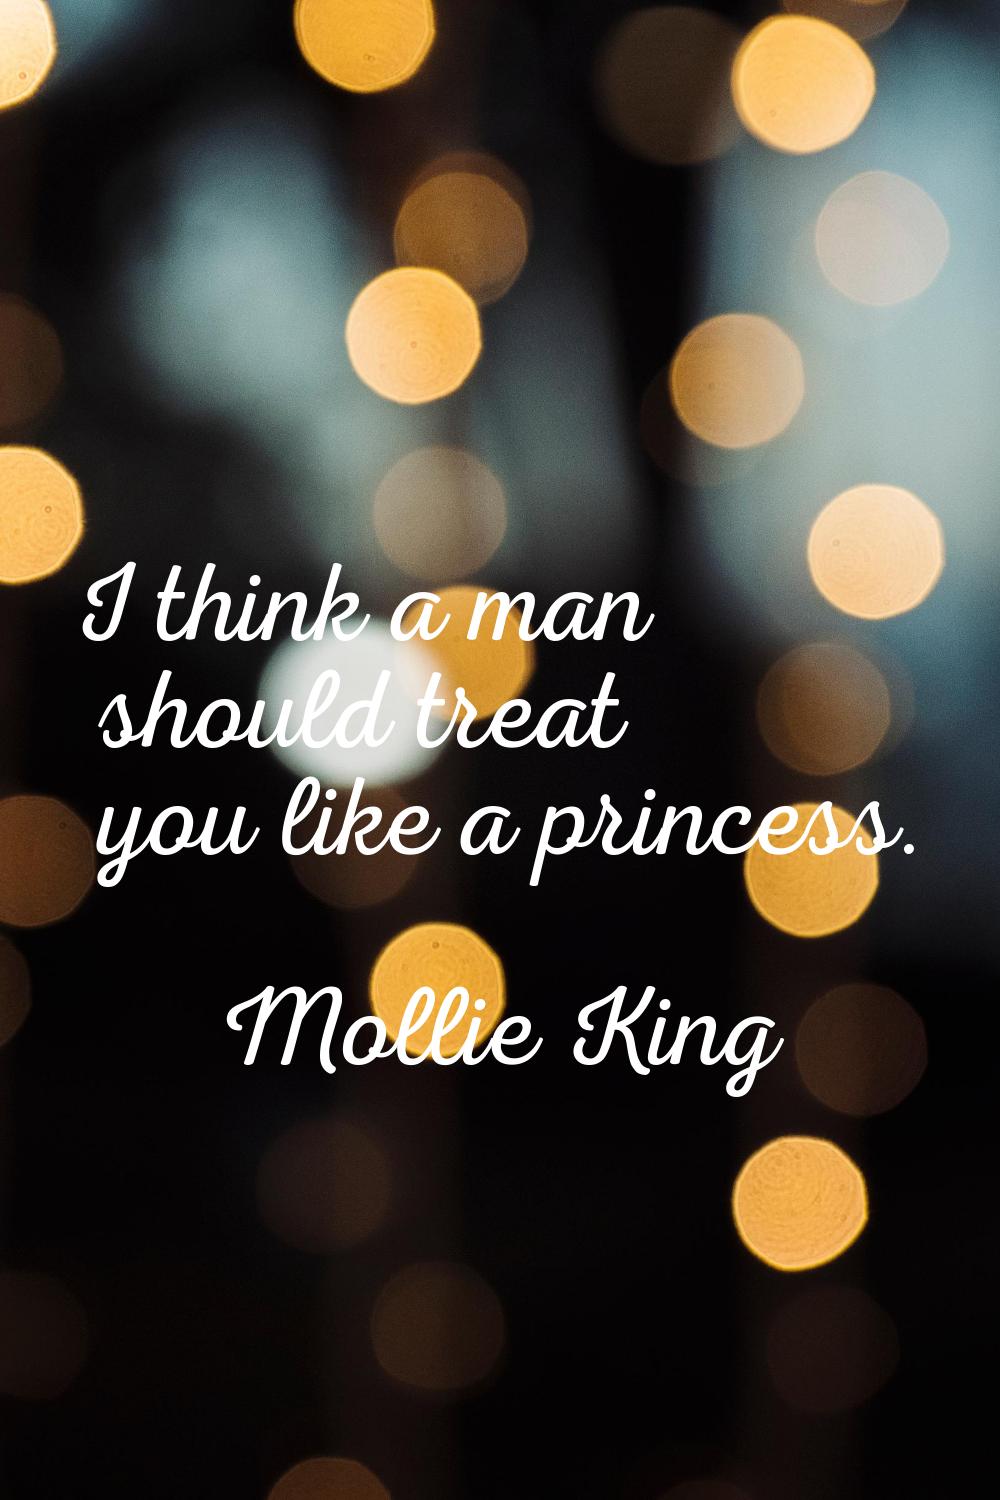 I think a man should treat you like a princess.